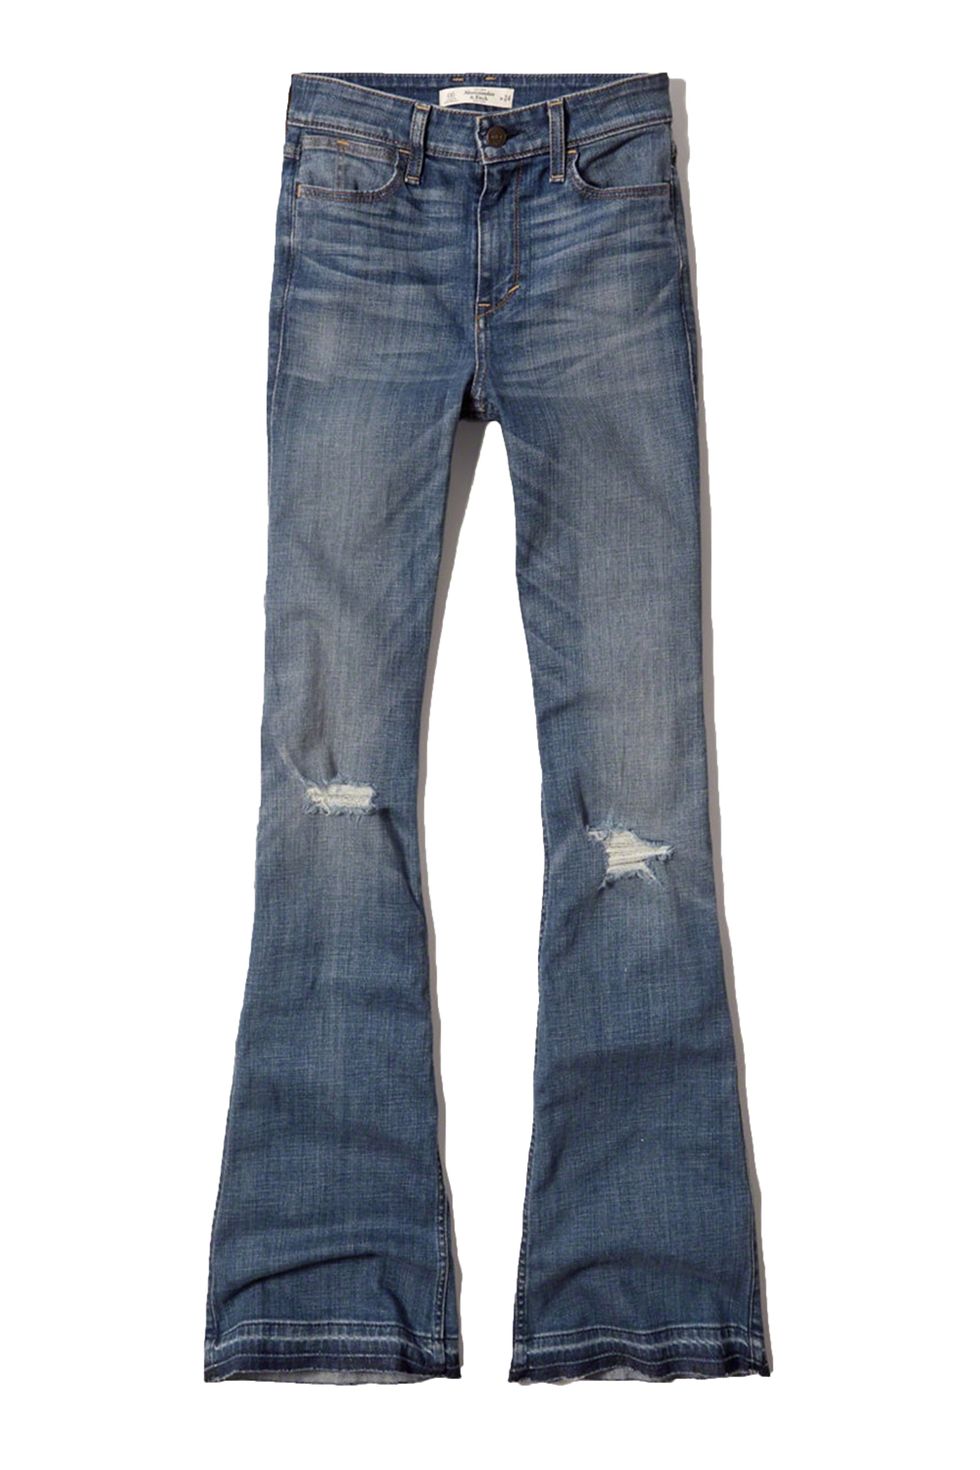 Hollister destroyed kick flare jeans